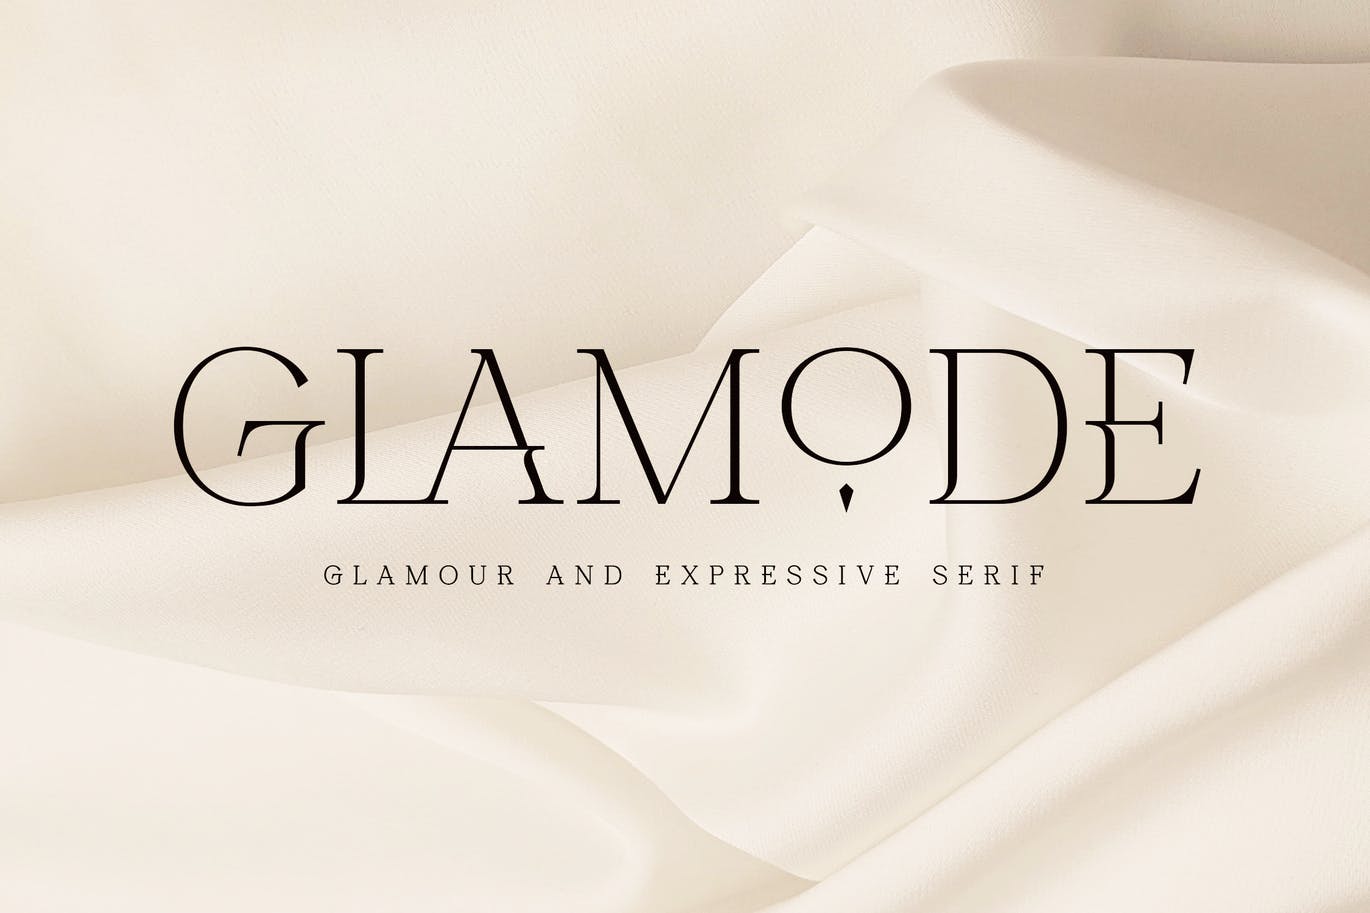 时尚优雅的电影婚礼品牌杂志海报排版英文衬线字体 Glamod